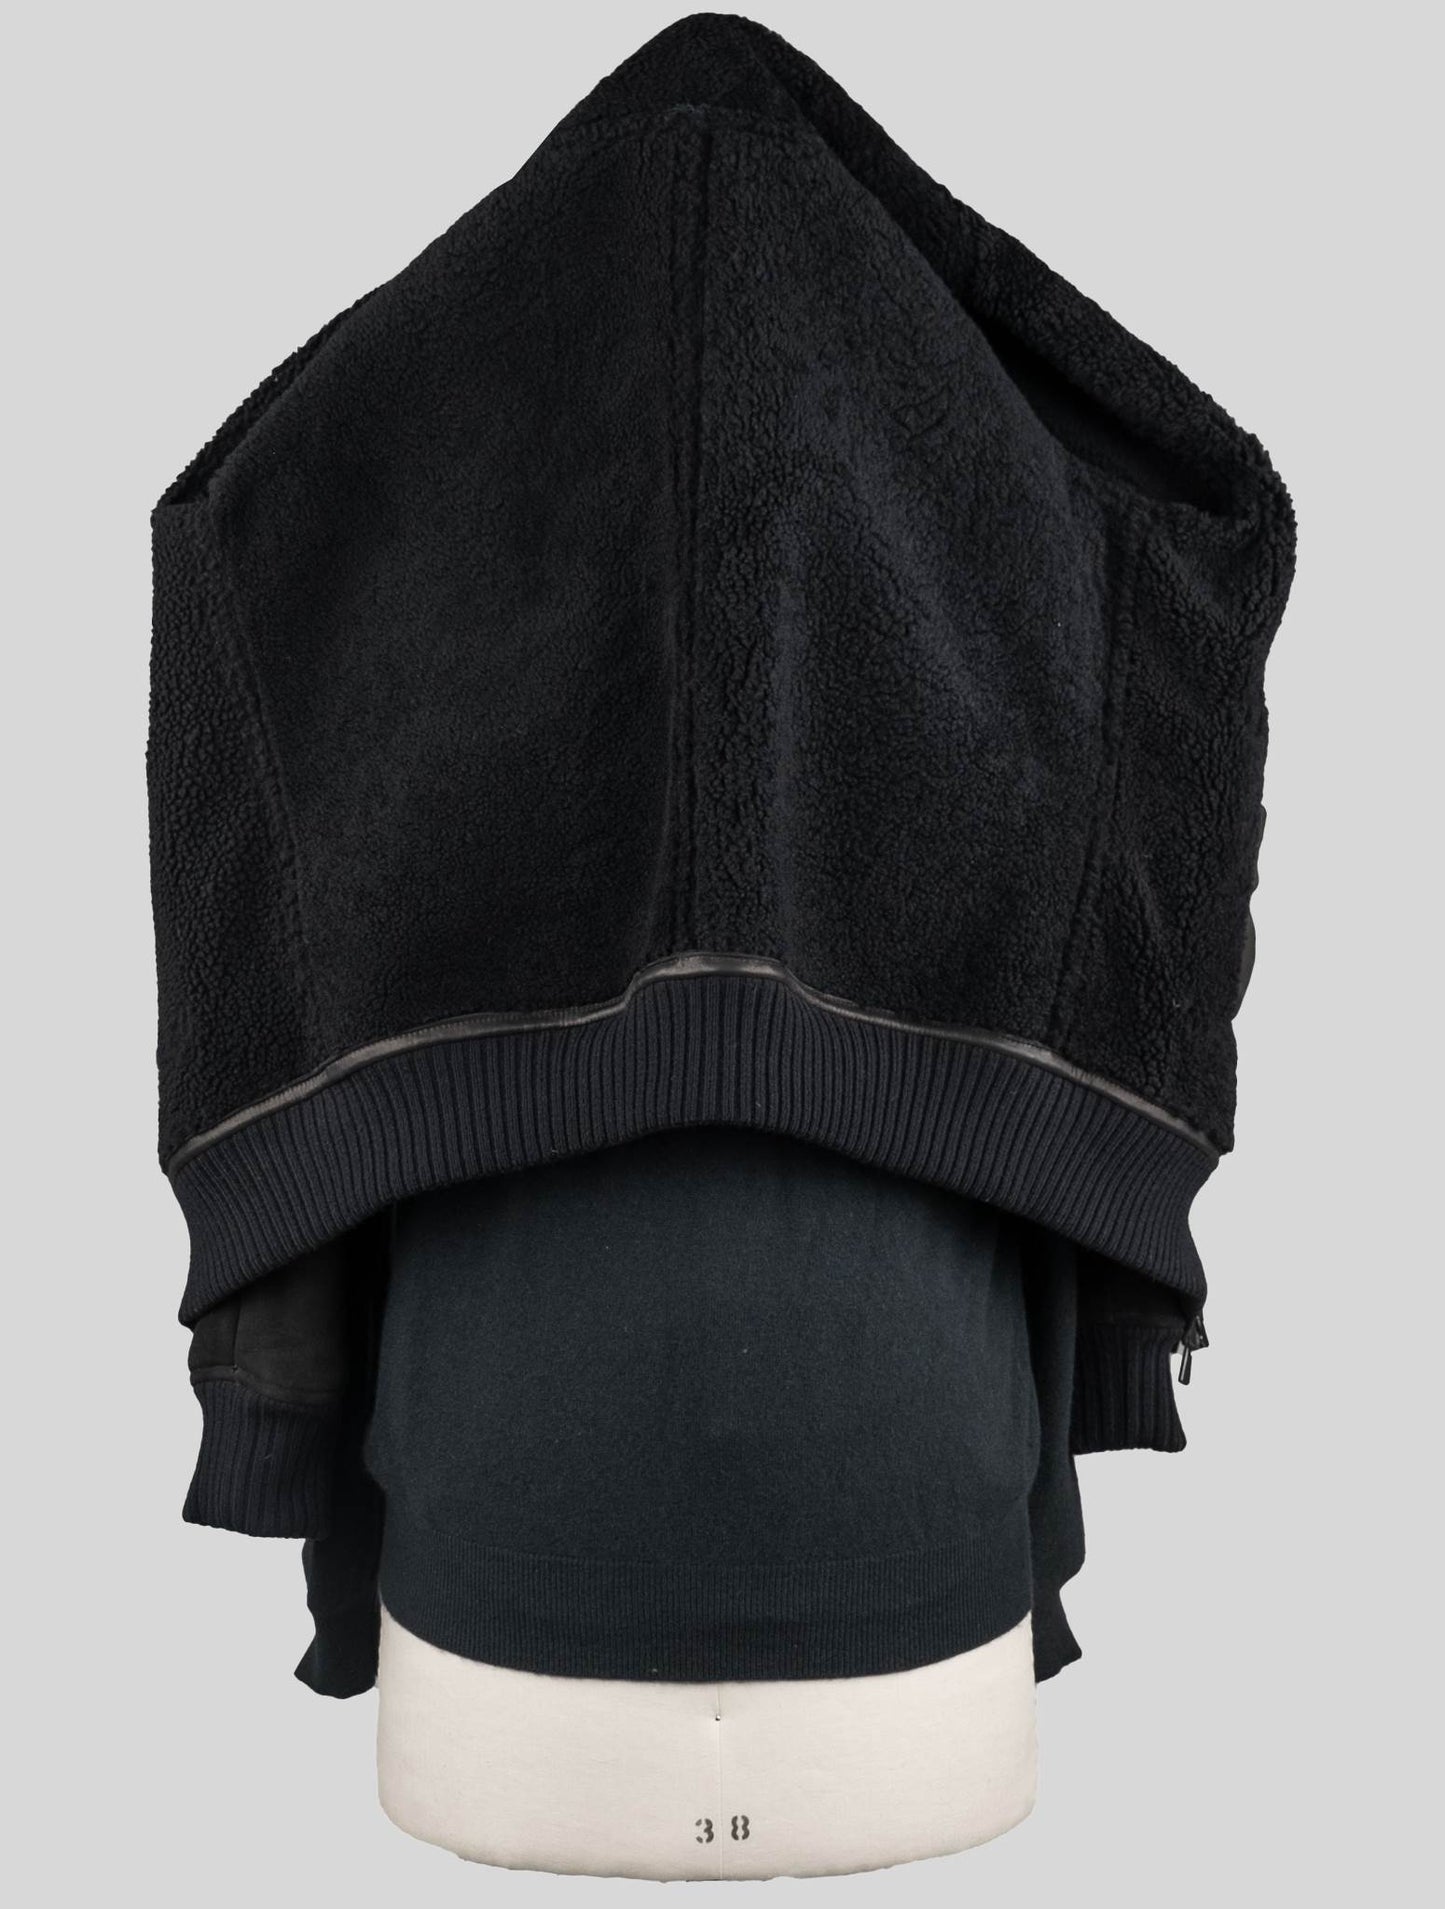 Isaia Black leather Sheepskin Coat